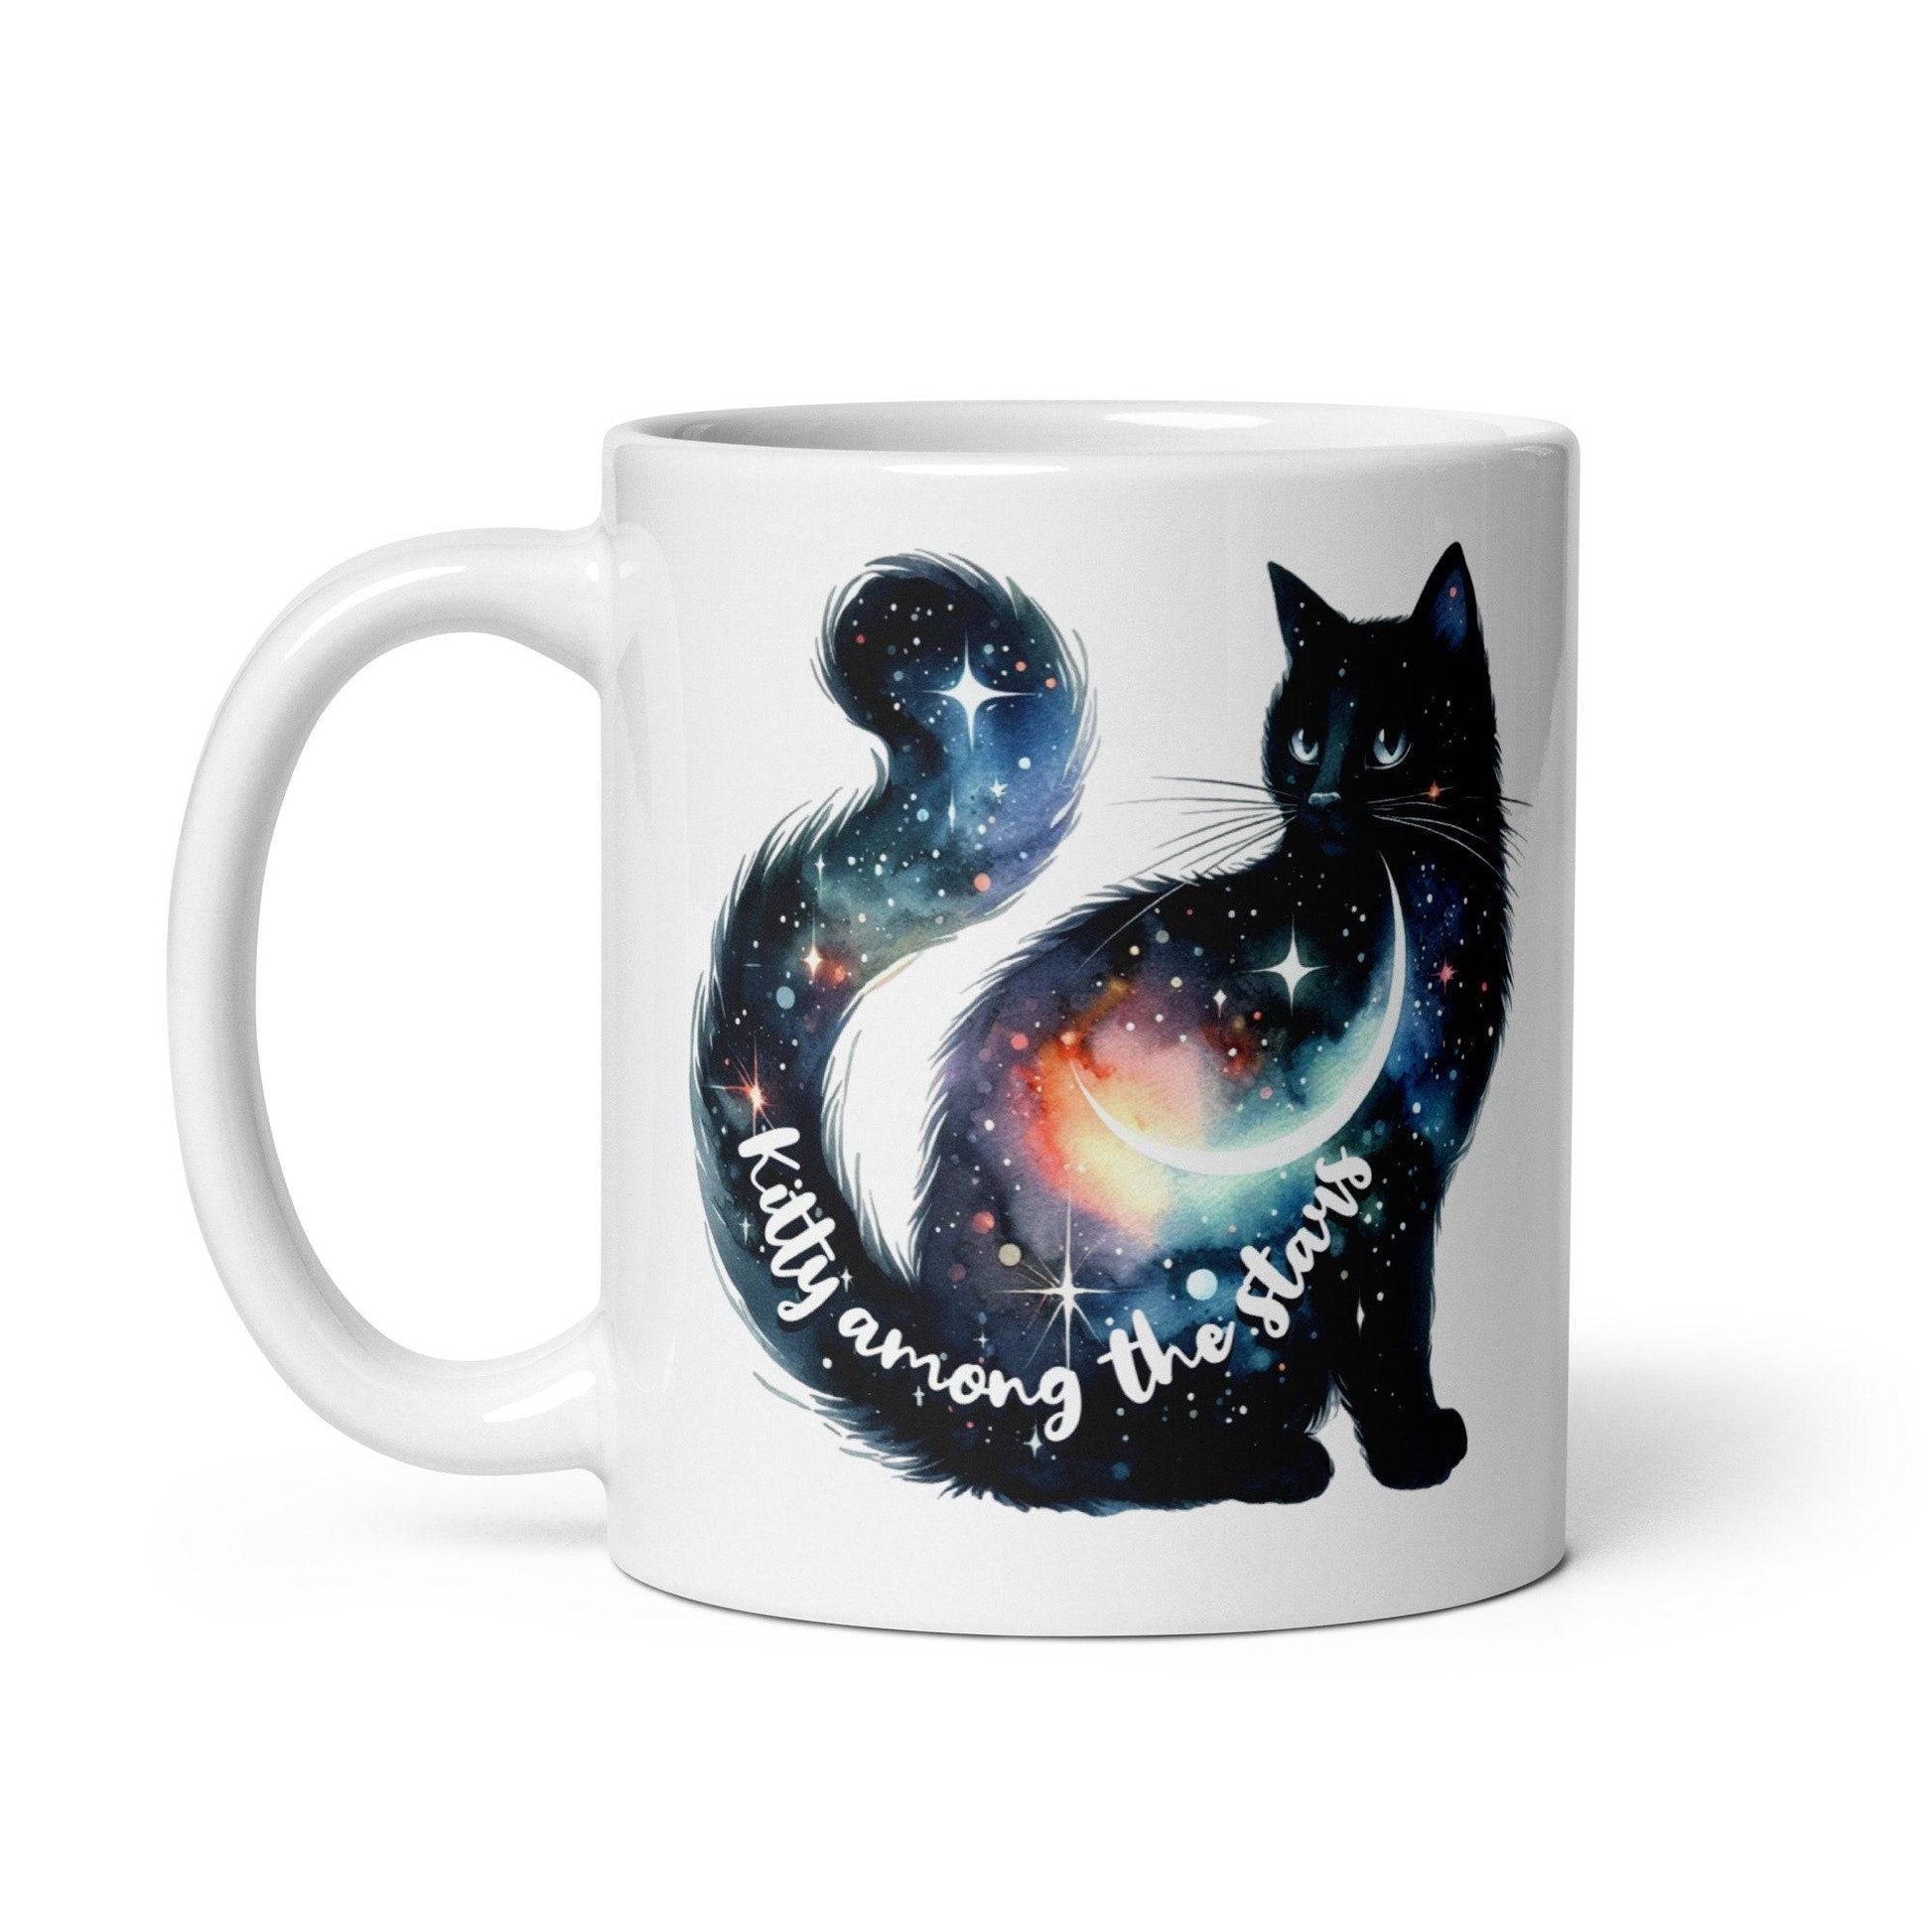 Celestial Mug - Charming Celestial Kitty Design - 